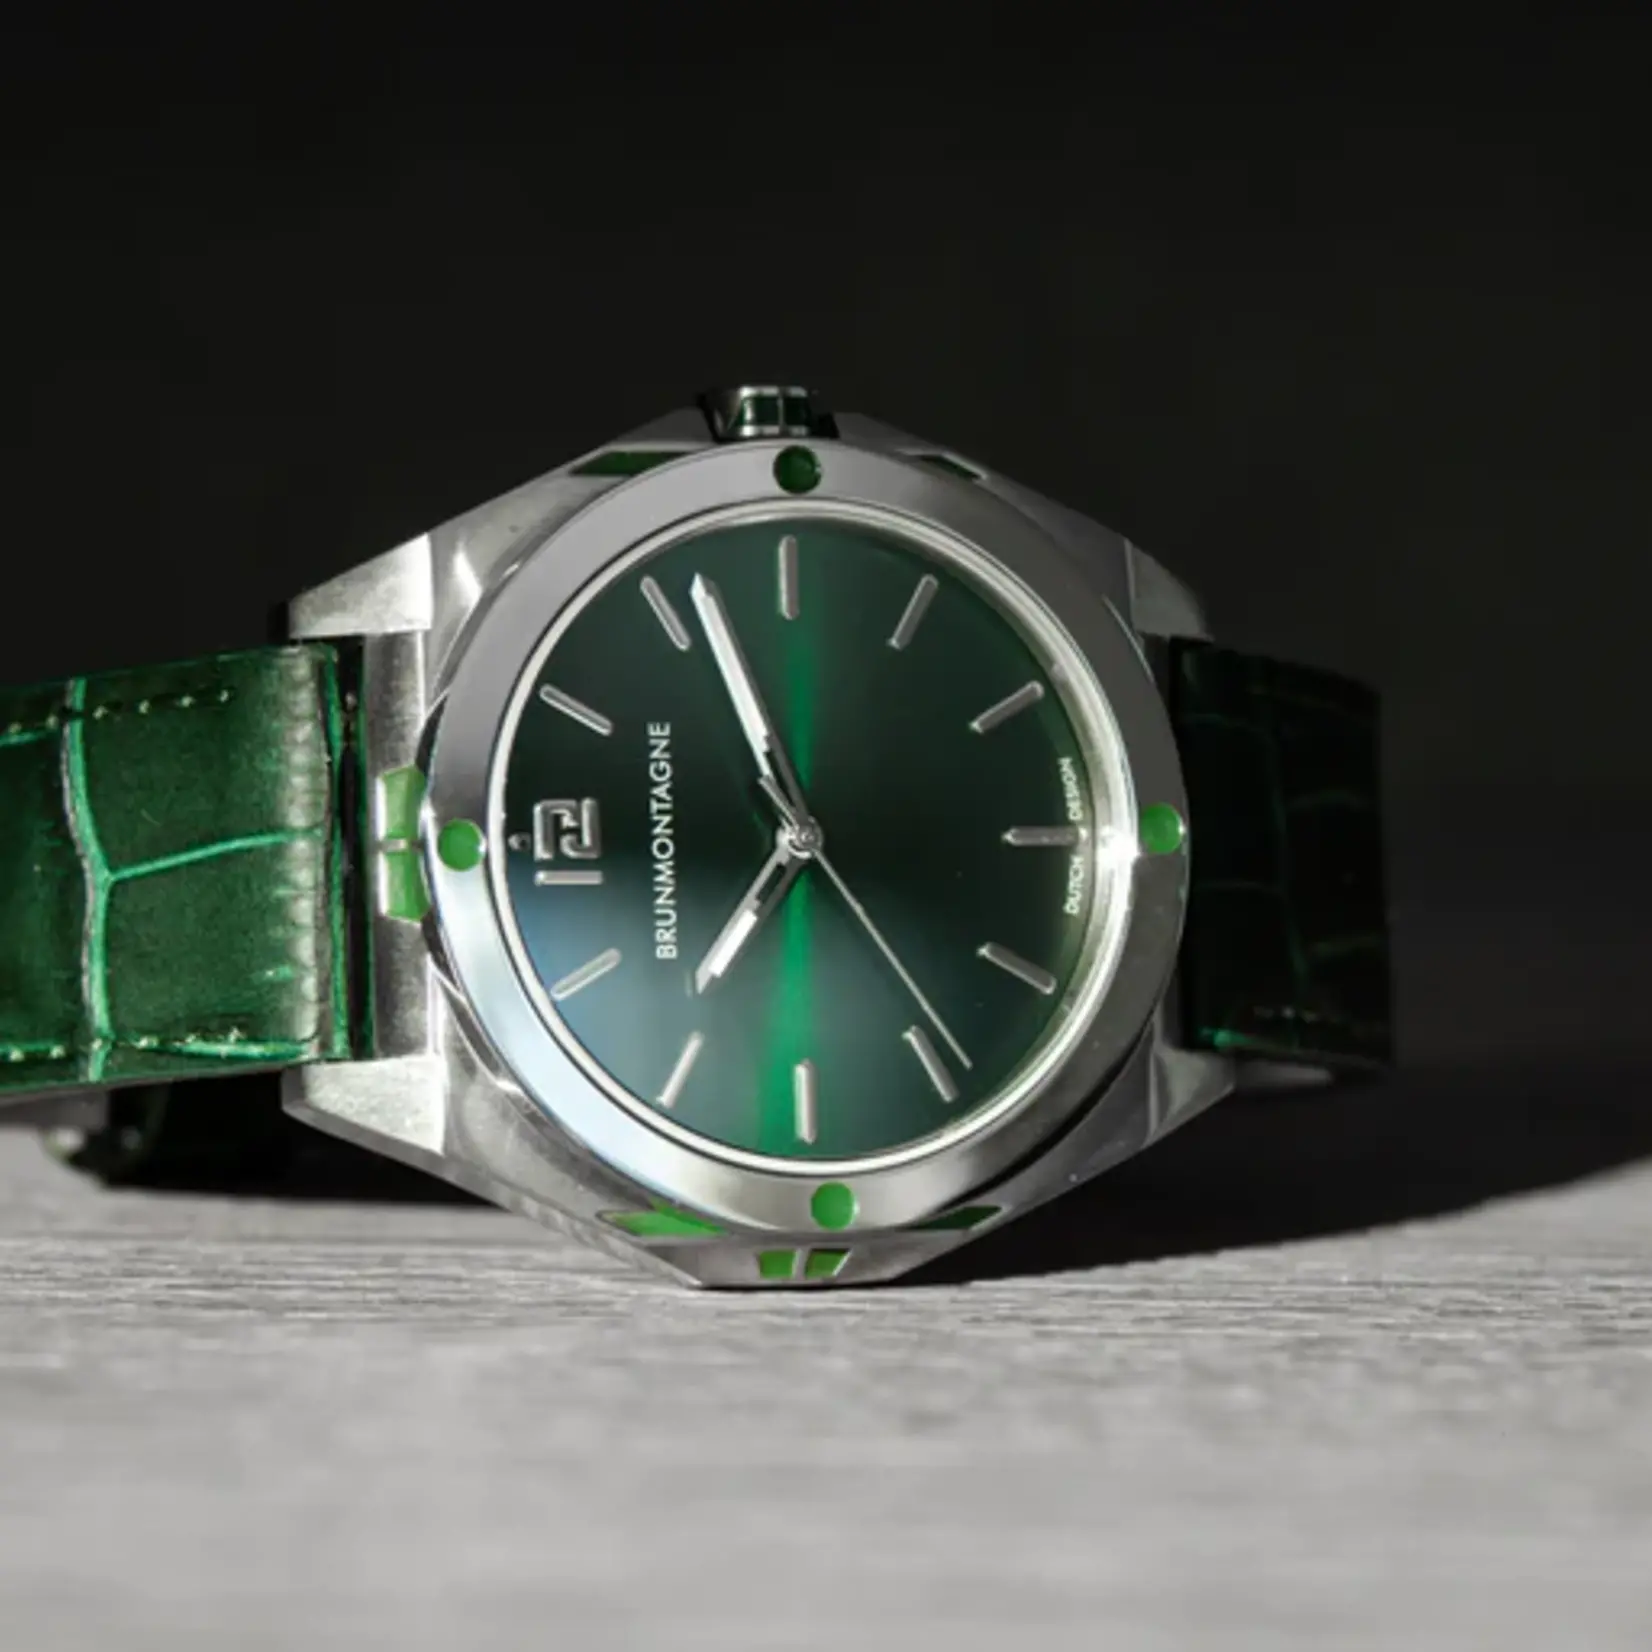 Brunmontagne Brunmontagne  horloge Representor Staal/Groen 42mm automaat